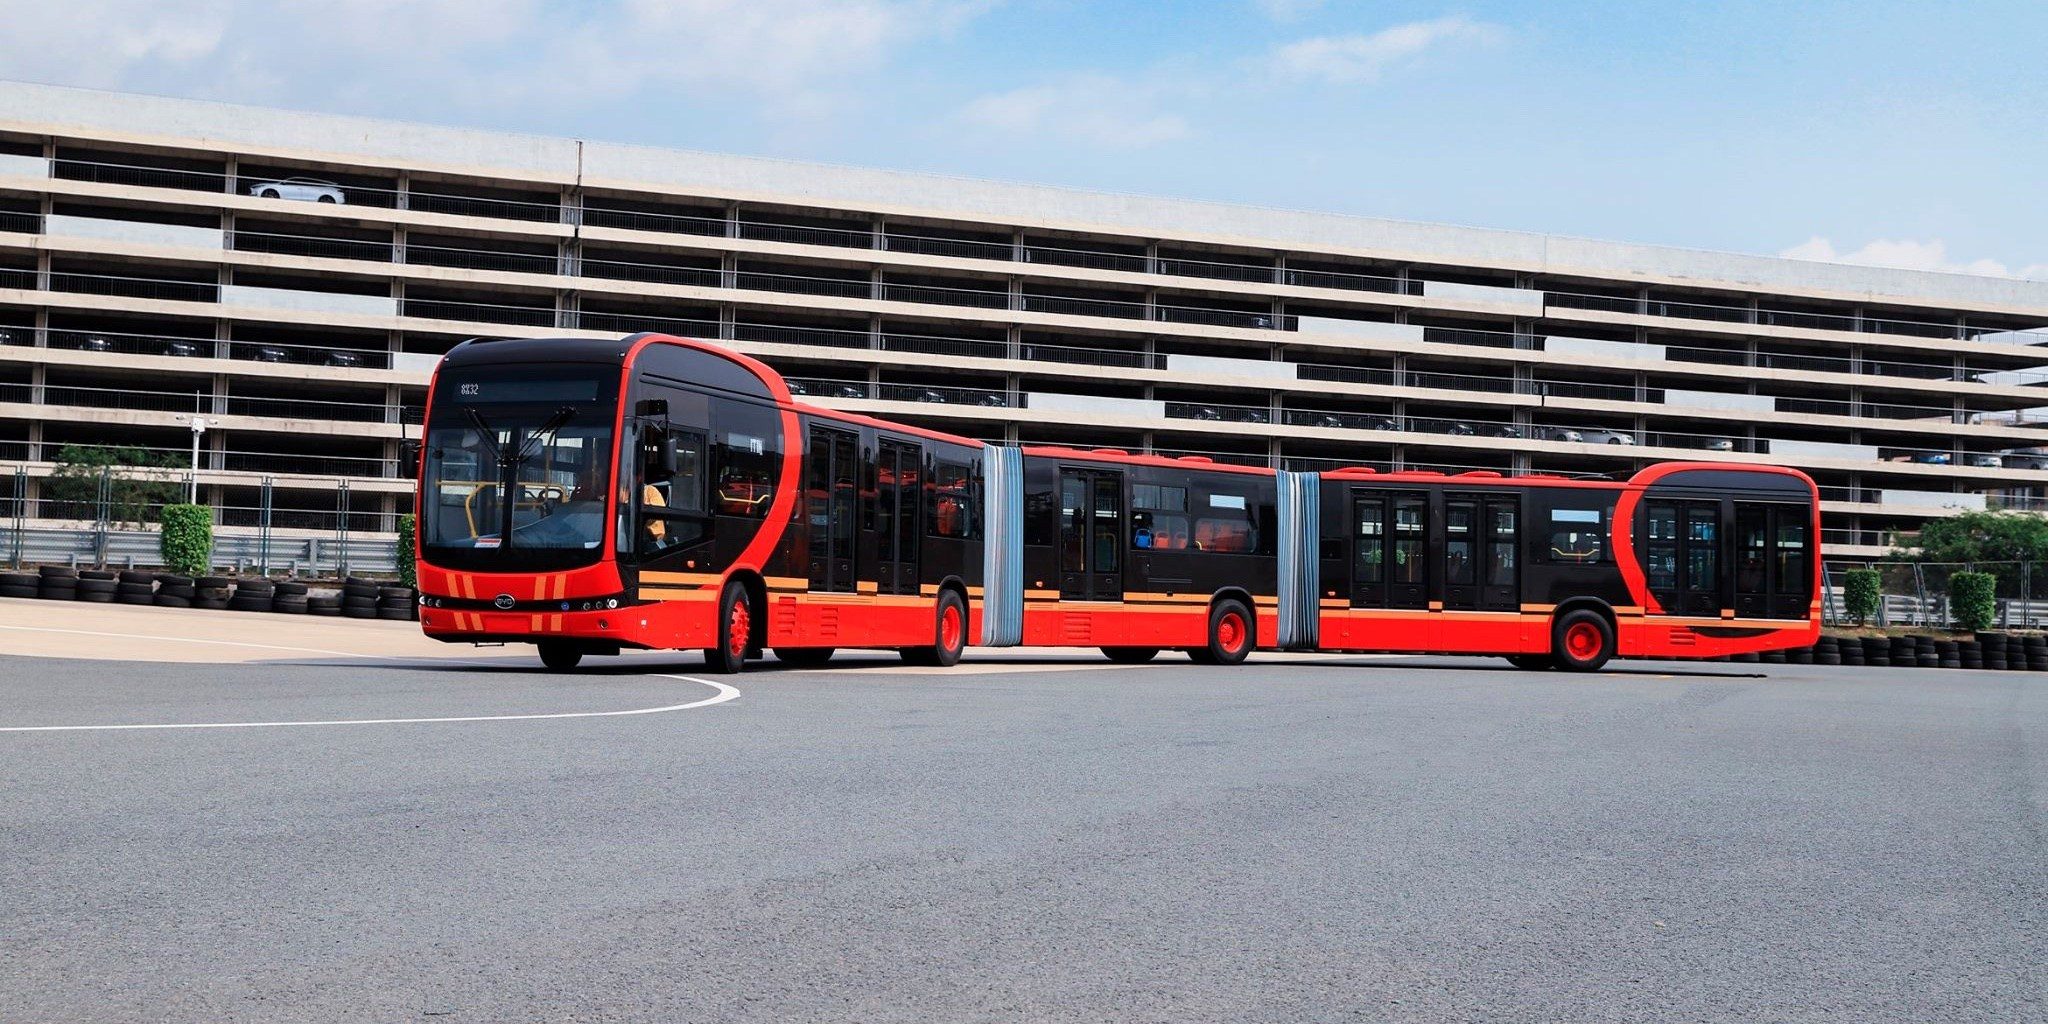 Dünyanın en uzun elektrikli otobüsü tanıtıldı! Kolombiya'daki Metrobüs hattında kullanılacak